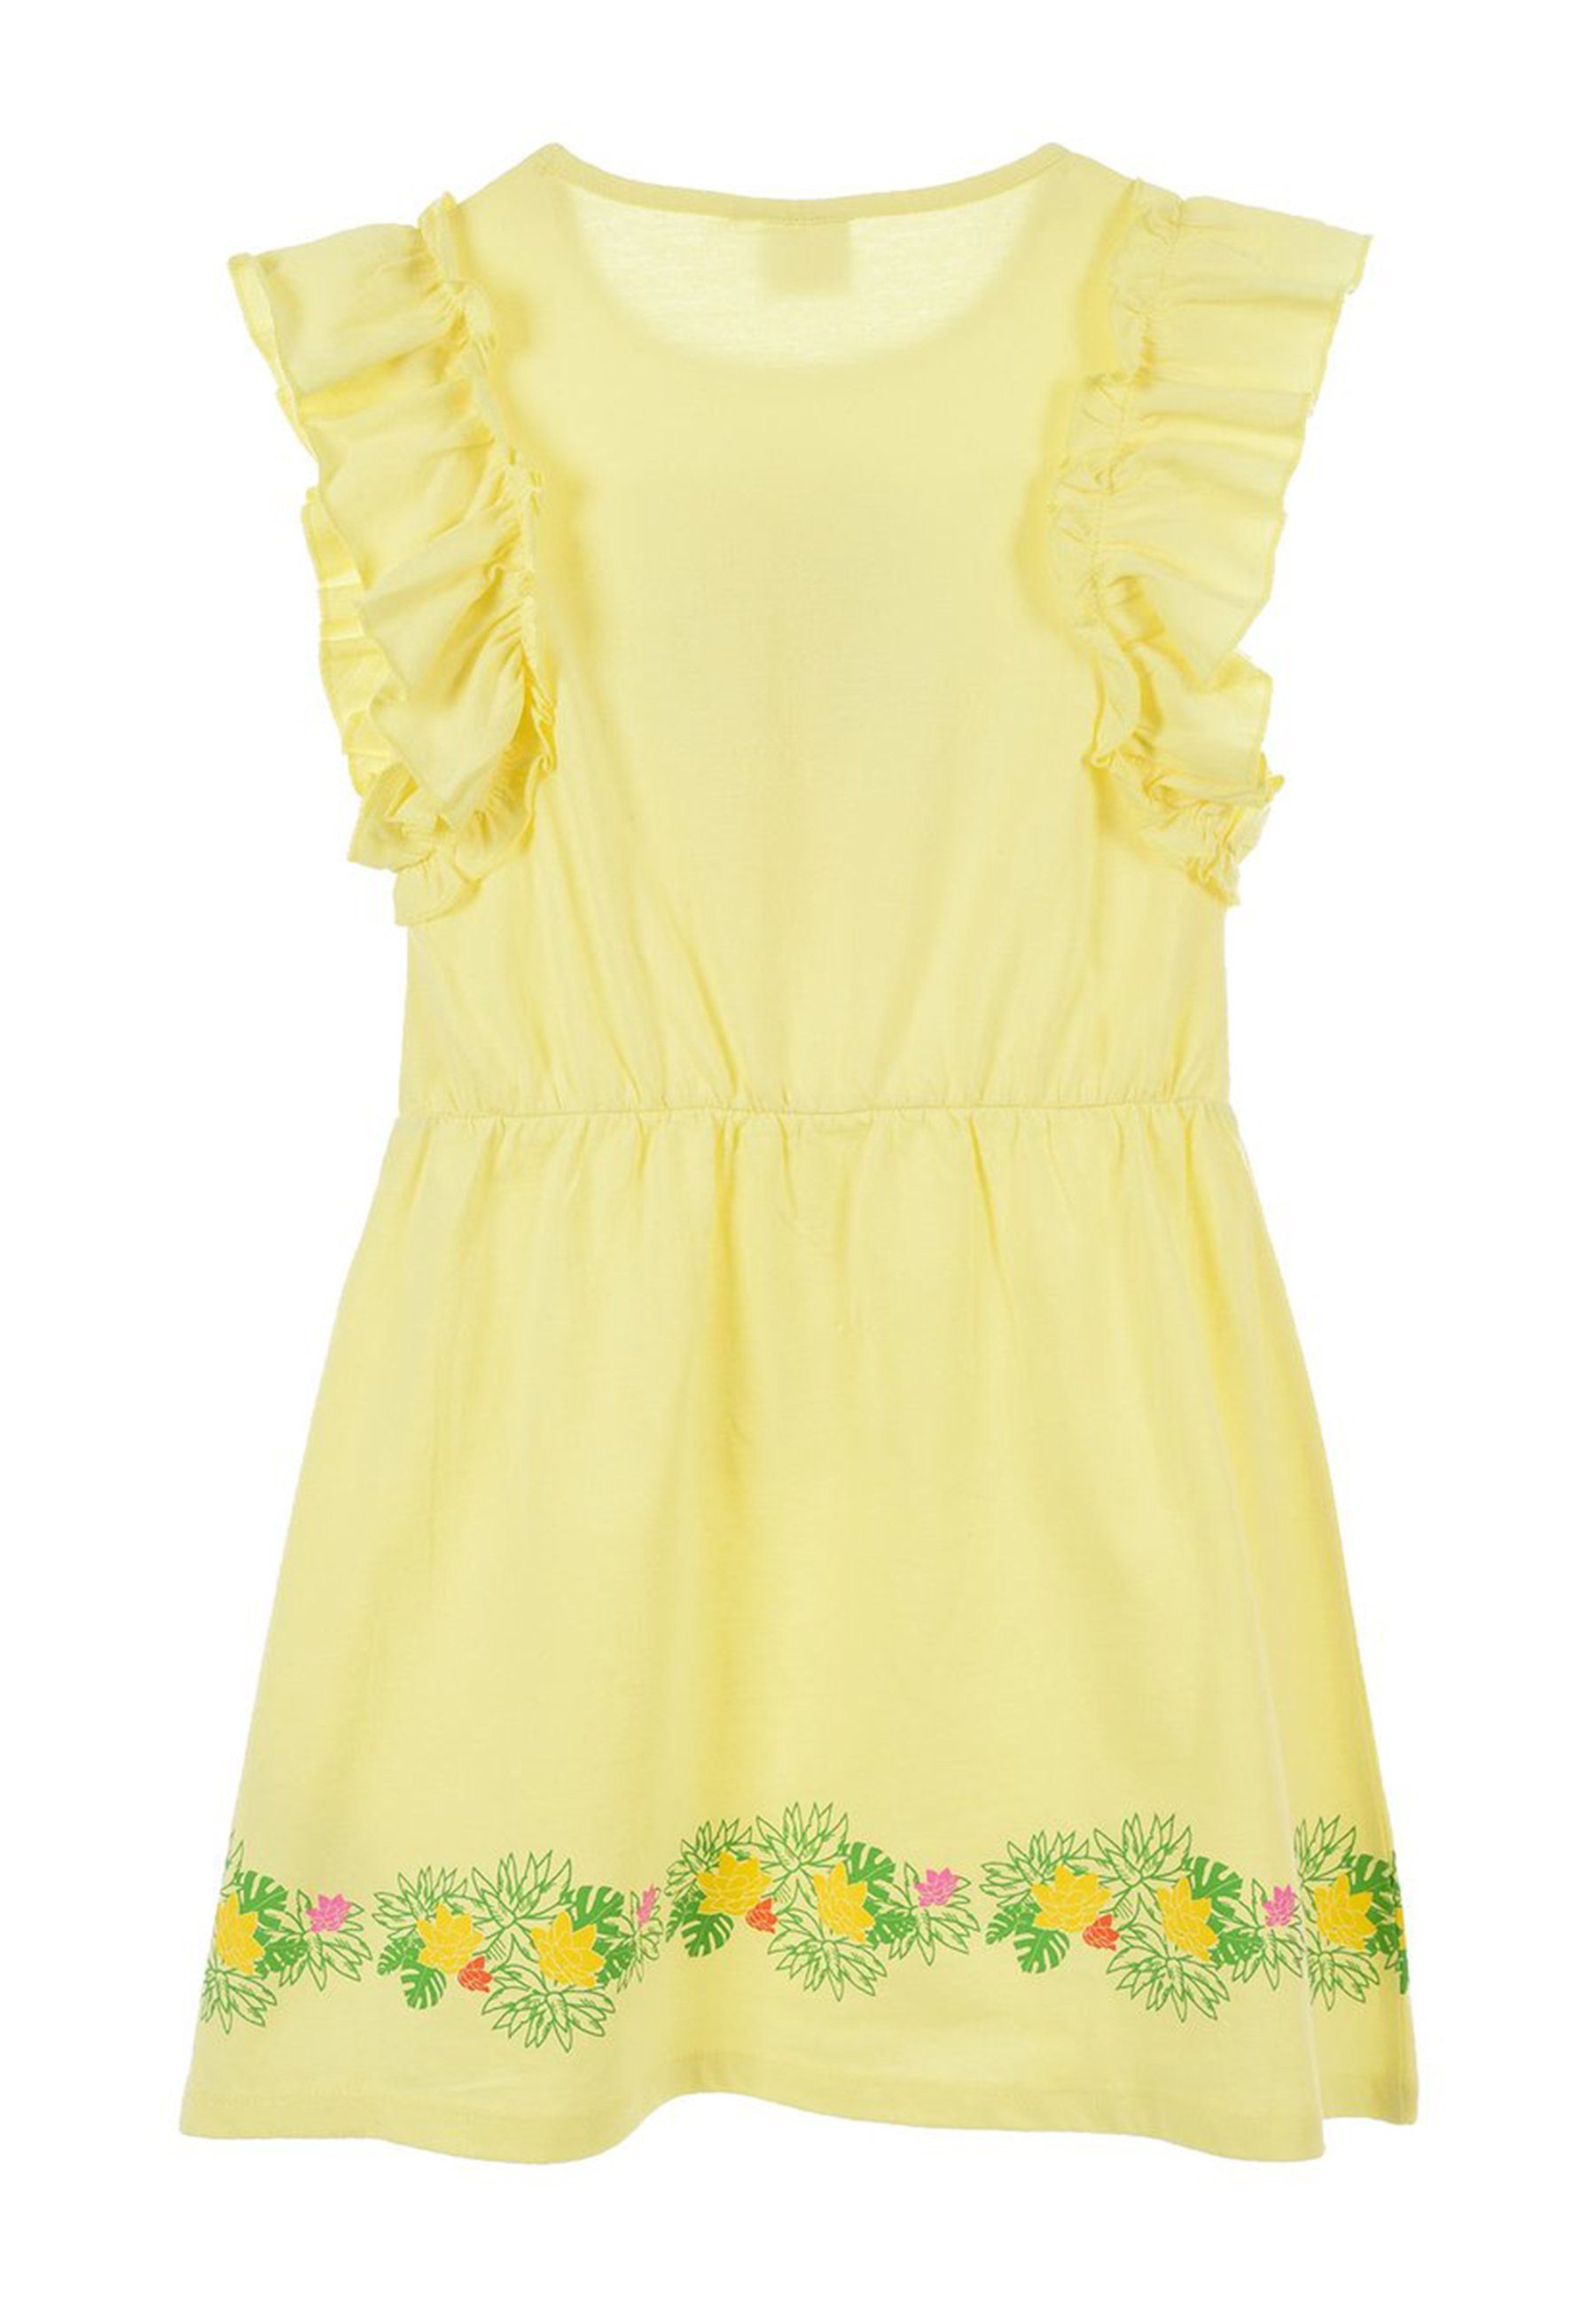 SURPRISE! Gelb Kinder Sommer-Kleid A-Linien-Kleid Party-Kleid Tüll L.O.L. Mädchen